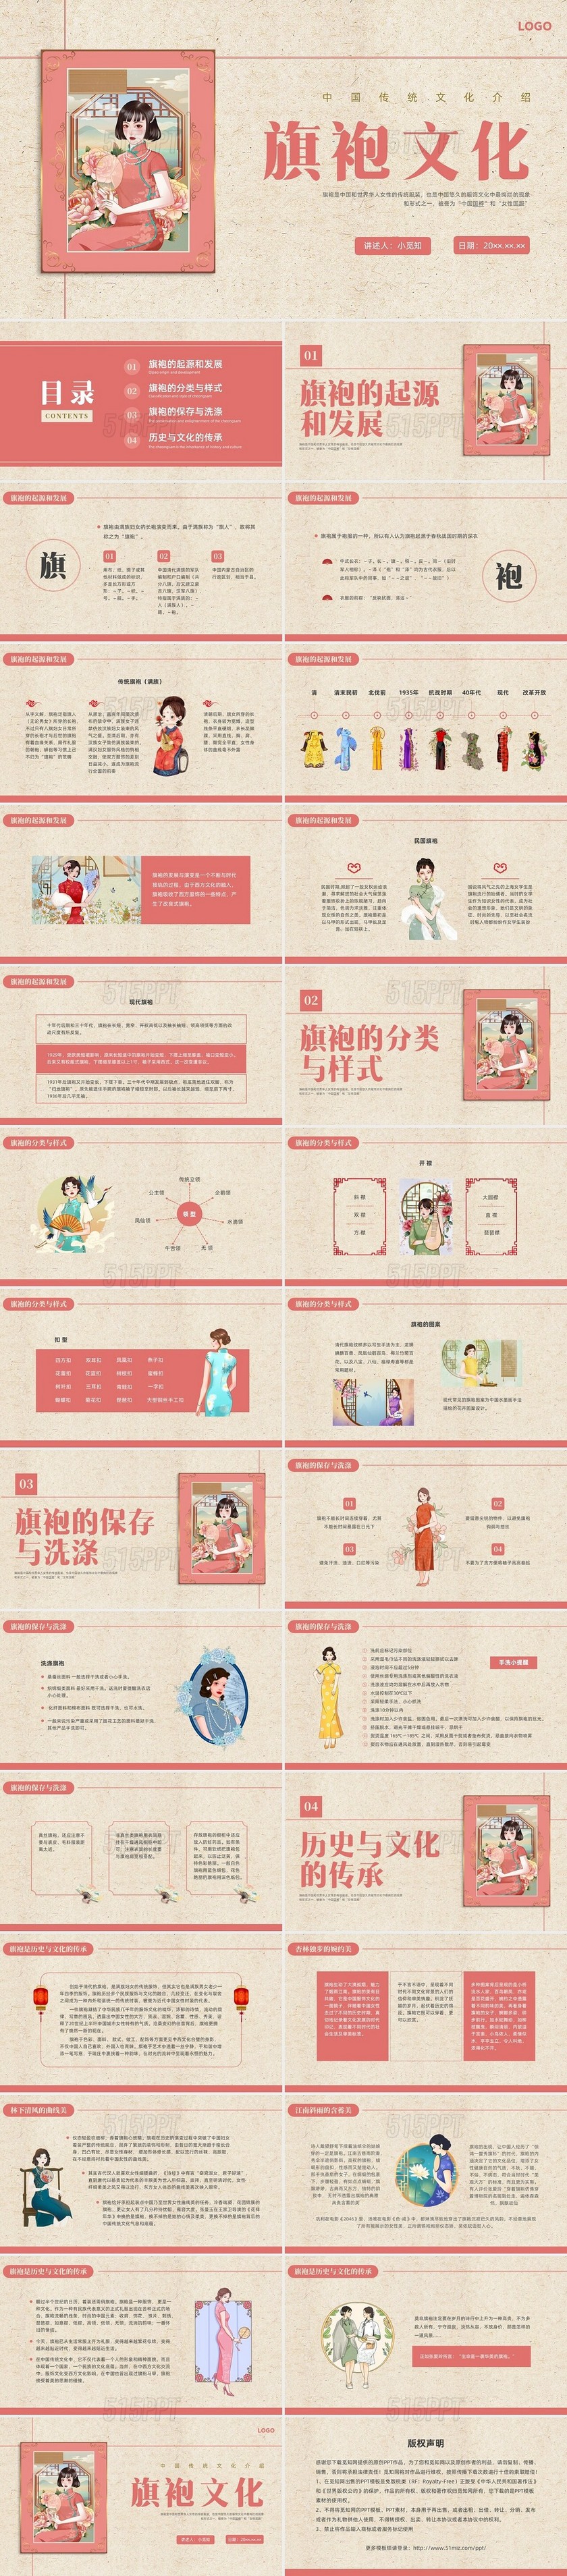 红色复古插画旗袍文化传统文化介绍PPT中国传统文化